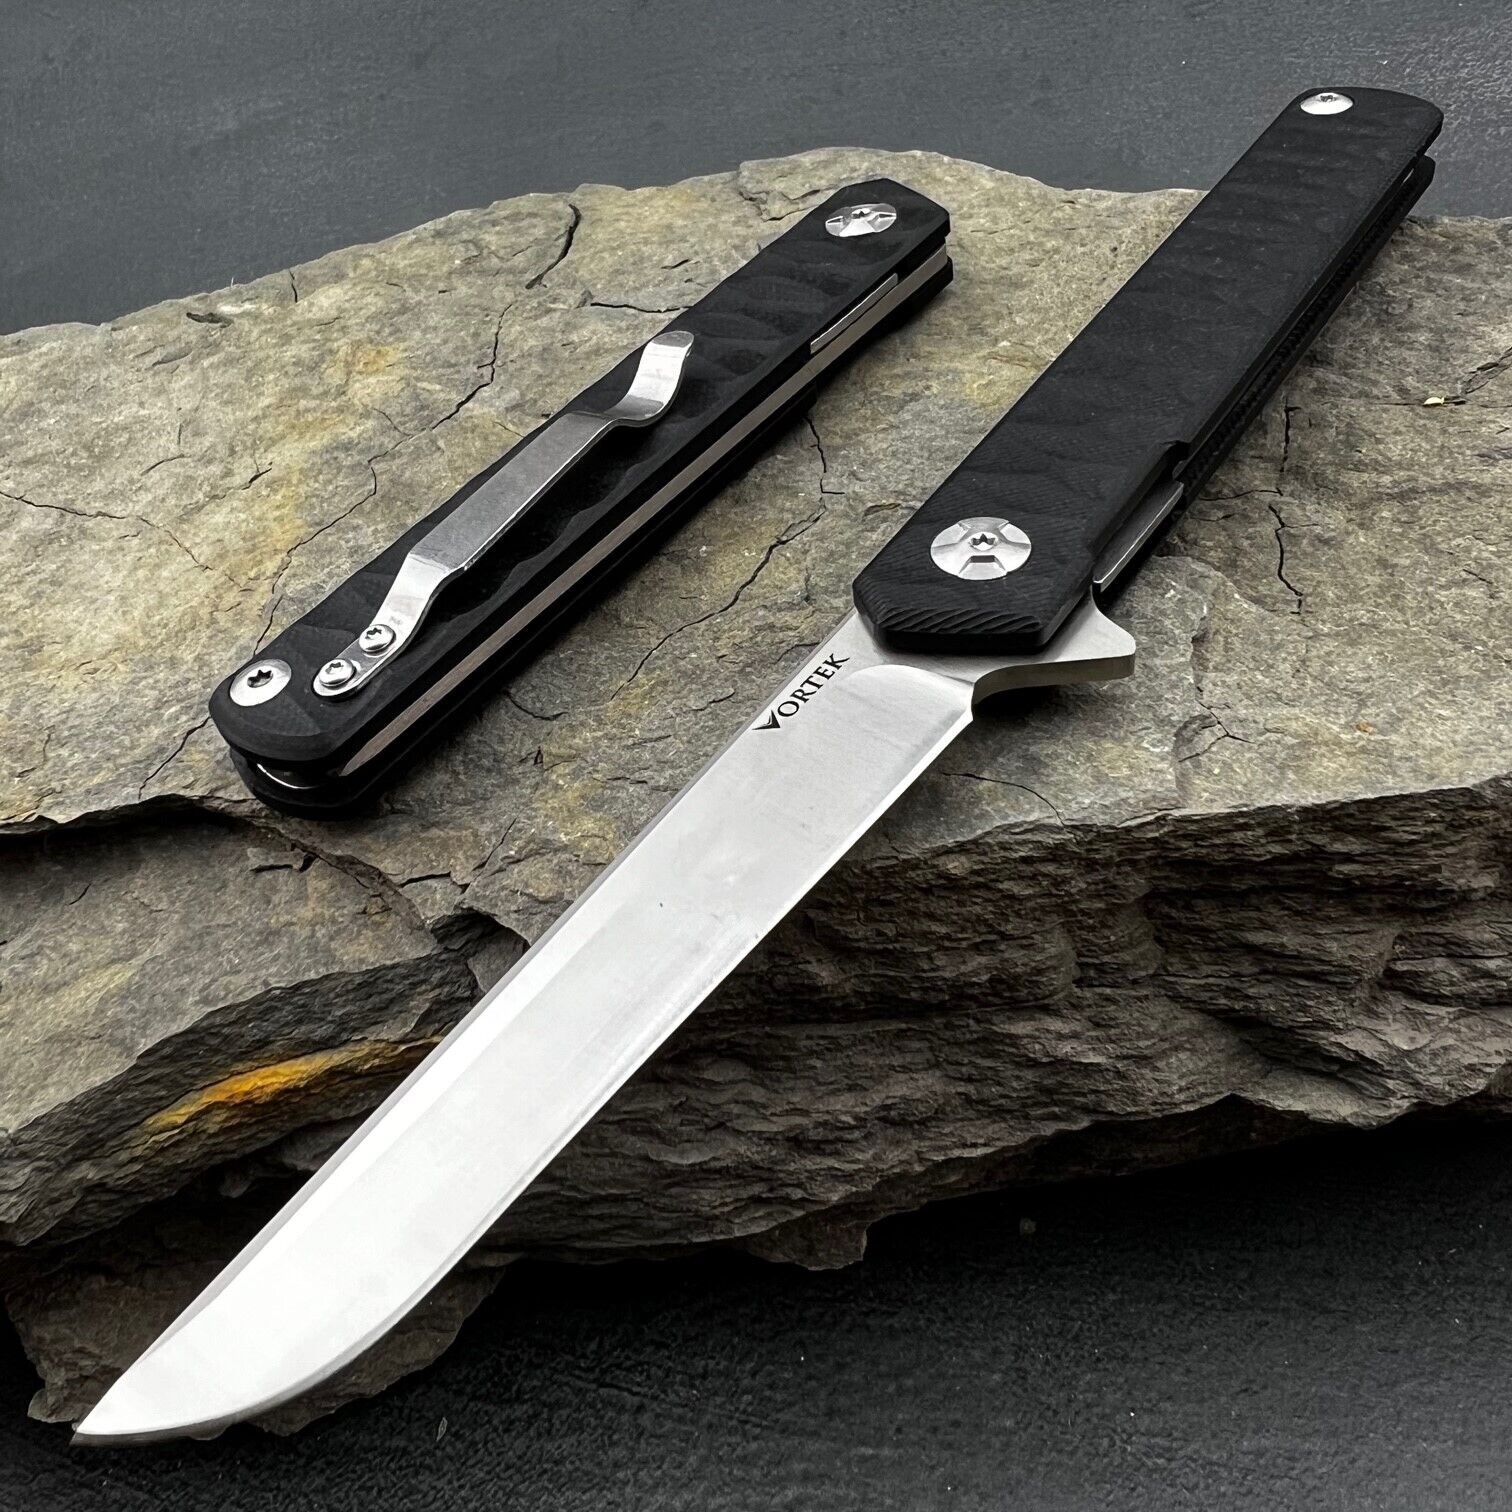 VORTEK ASTRO Black G10 Long Sleek Slender Blade Ball Bearing Folder Pocket Knife